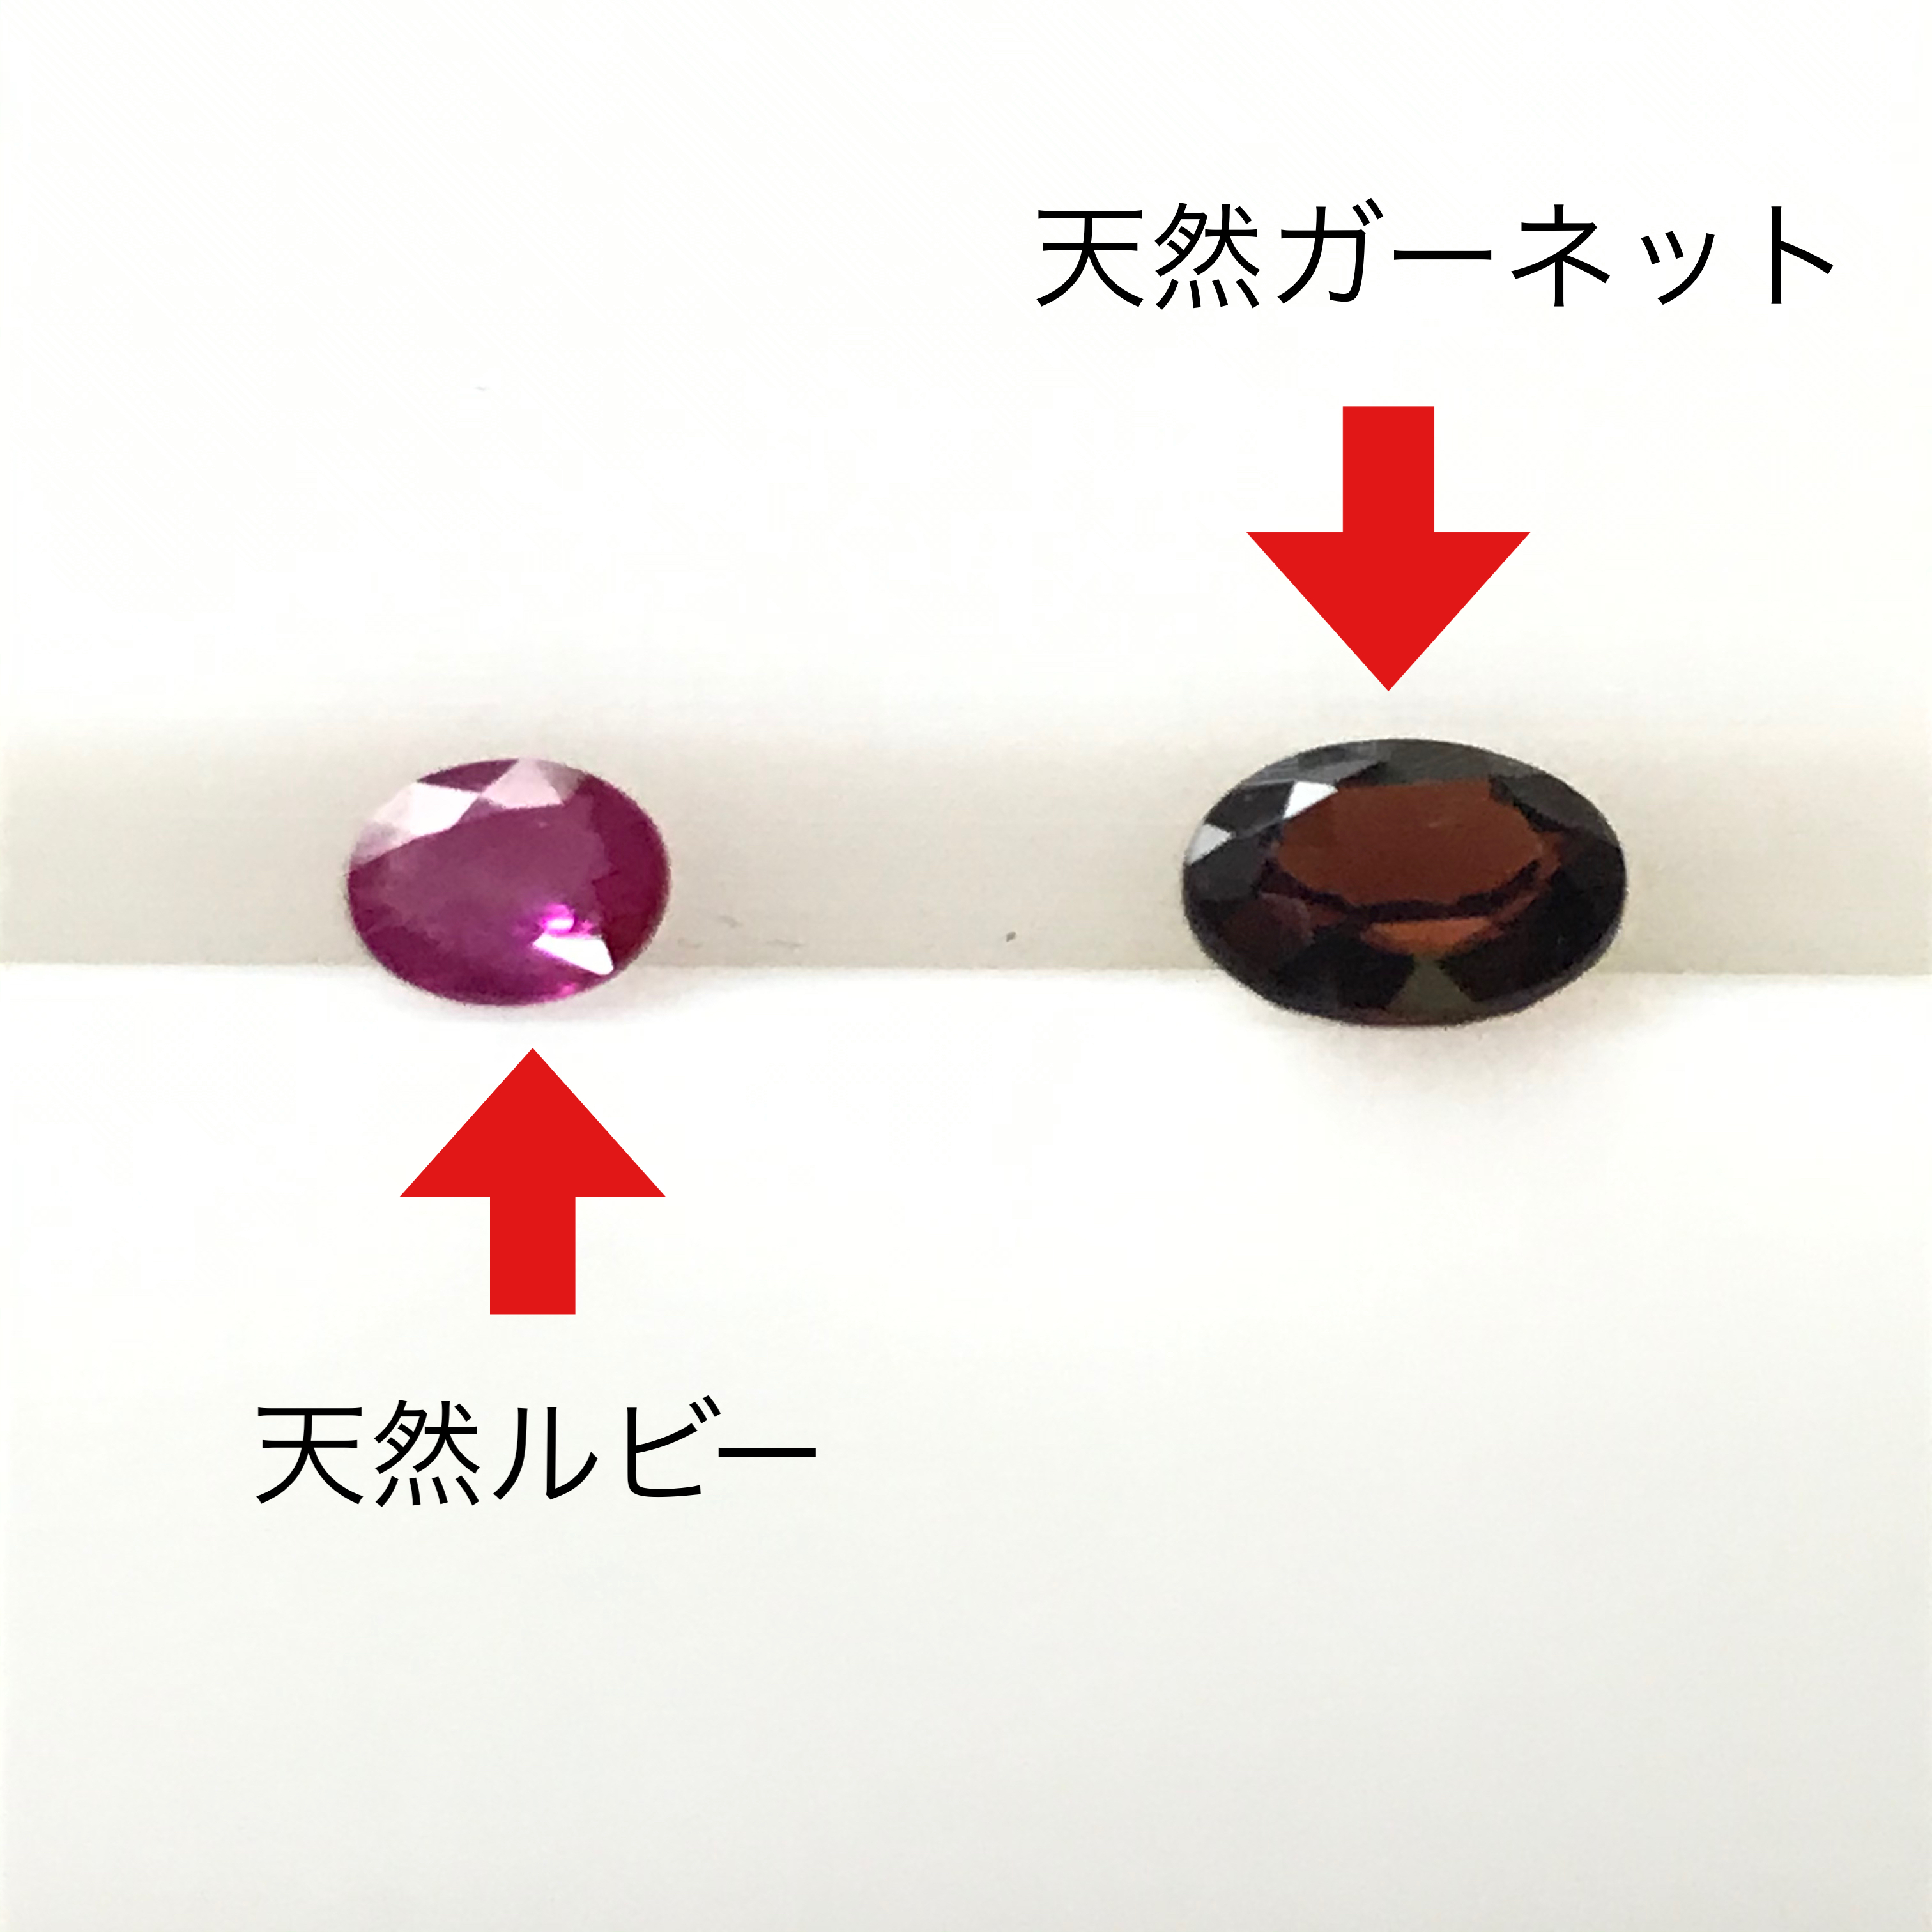 宝石の見分け方 鑑別 蛍光検査 虫眼鏡ヒカリのブログ